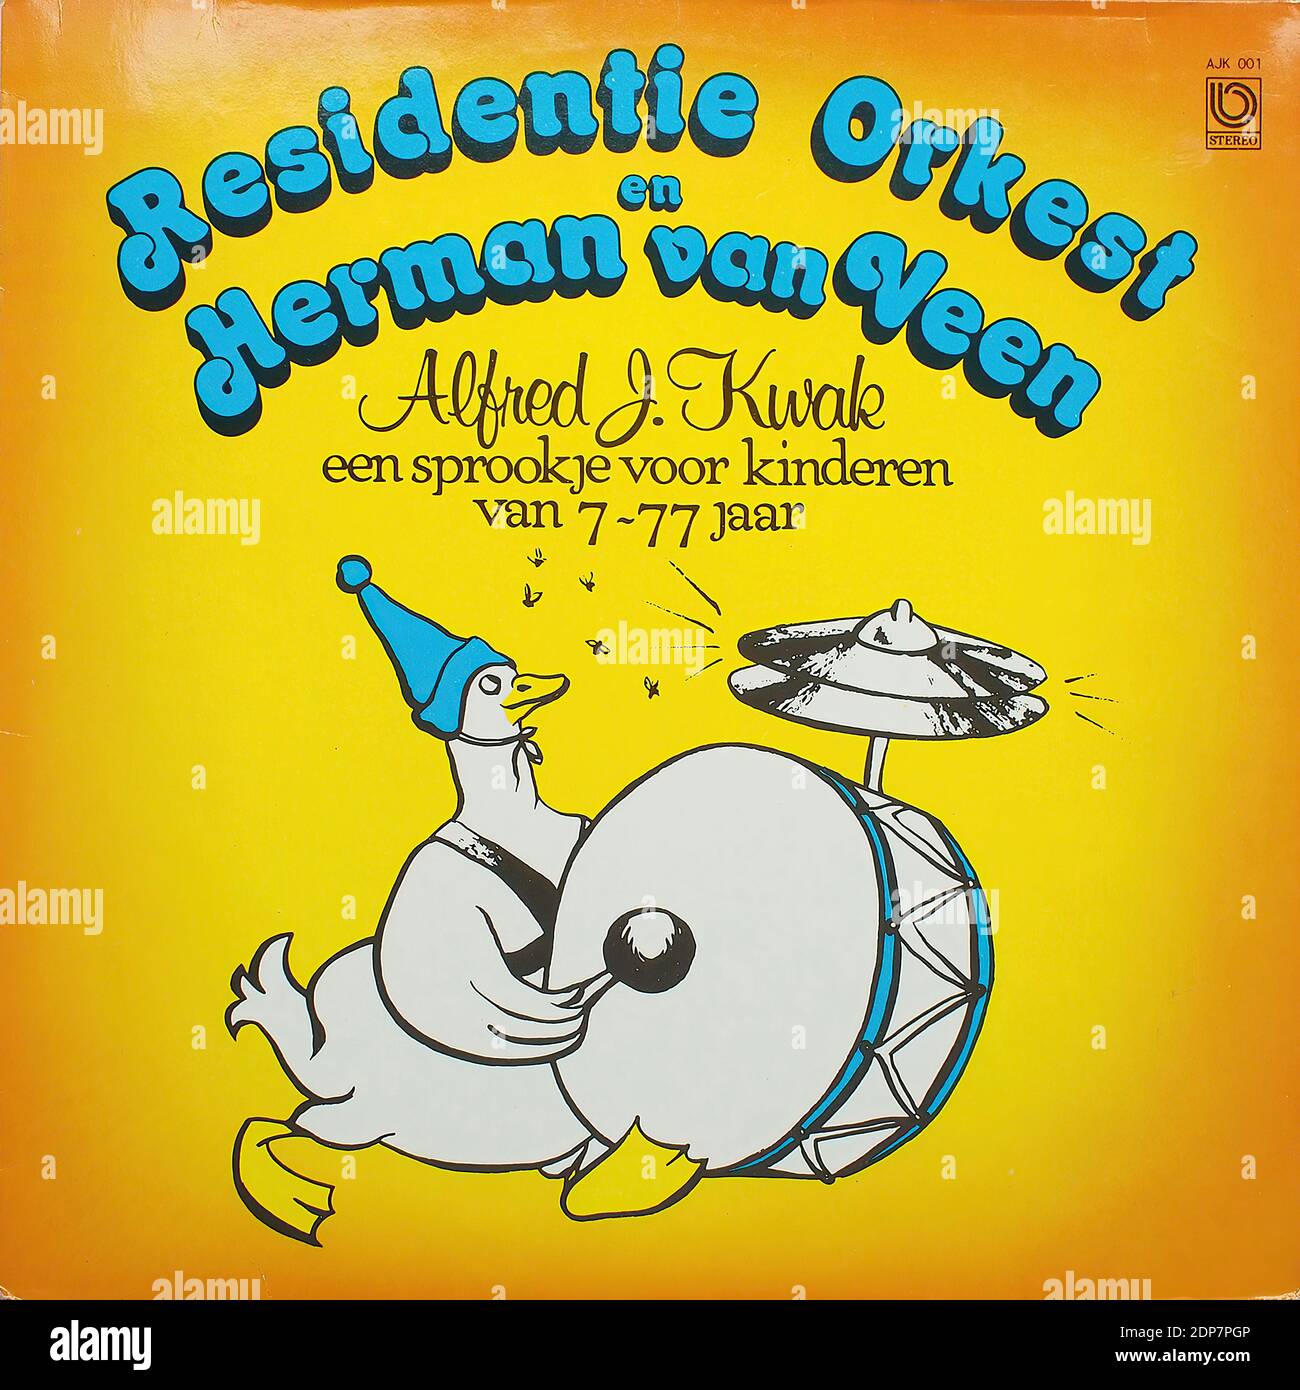 Residentie Orkest en Herman van Veen - Alfred J. Kwak, een sprookje voor kinderen van 7-77 jaar  - Vintage vinyl album cover Stock Photo